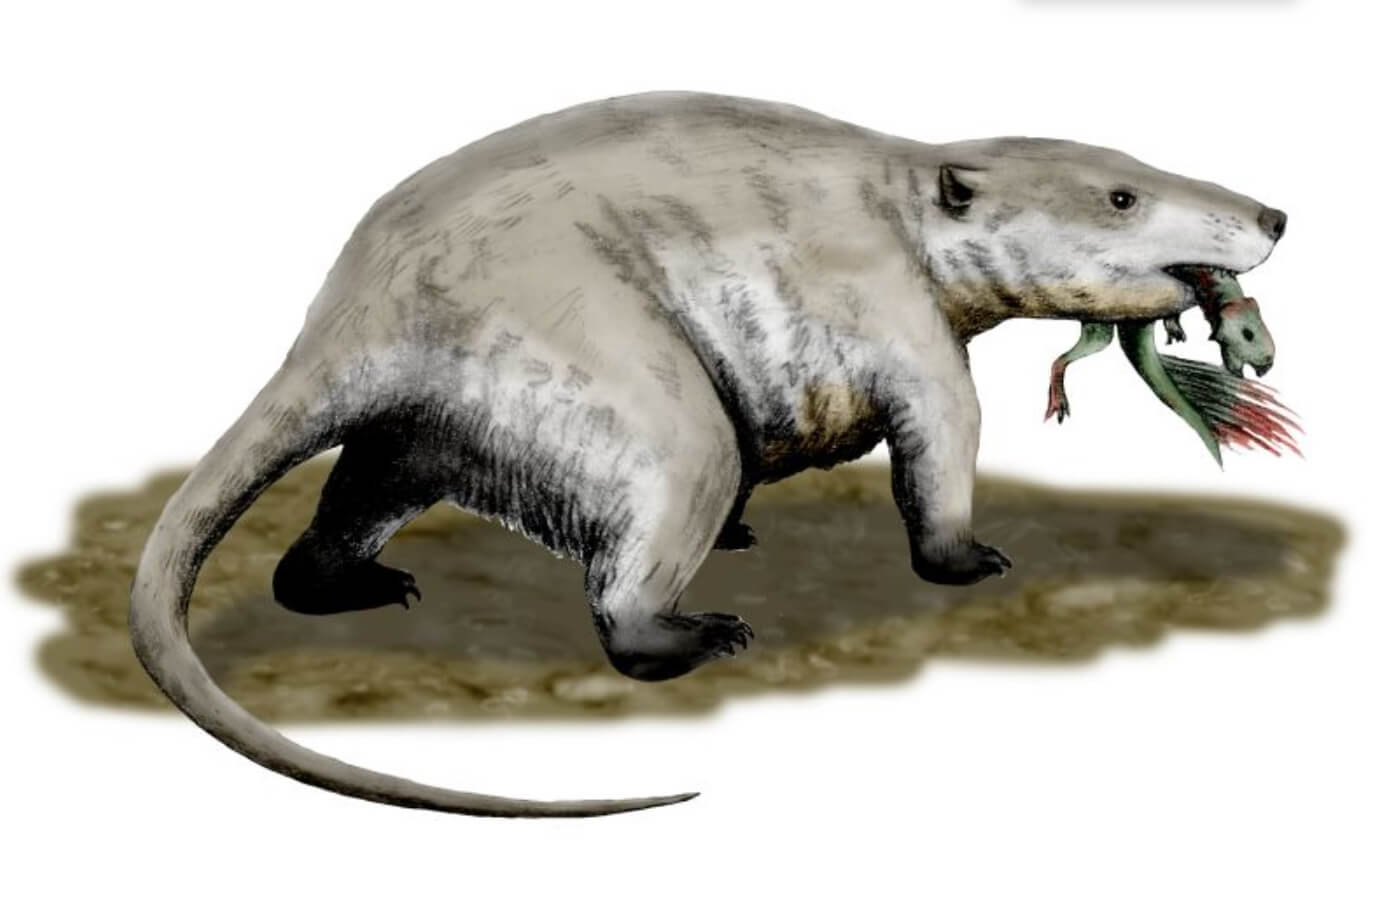 Динозавры не были непобедимыми. Репеномам. Изображение: Википедия. Фото.